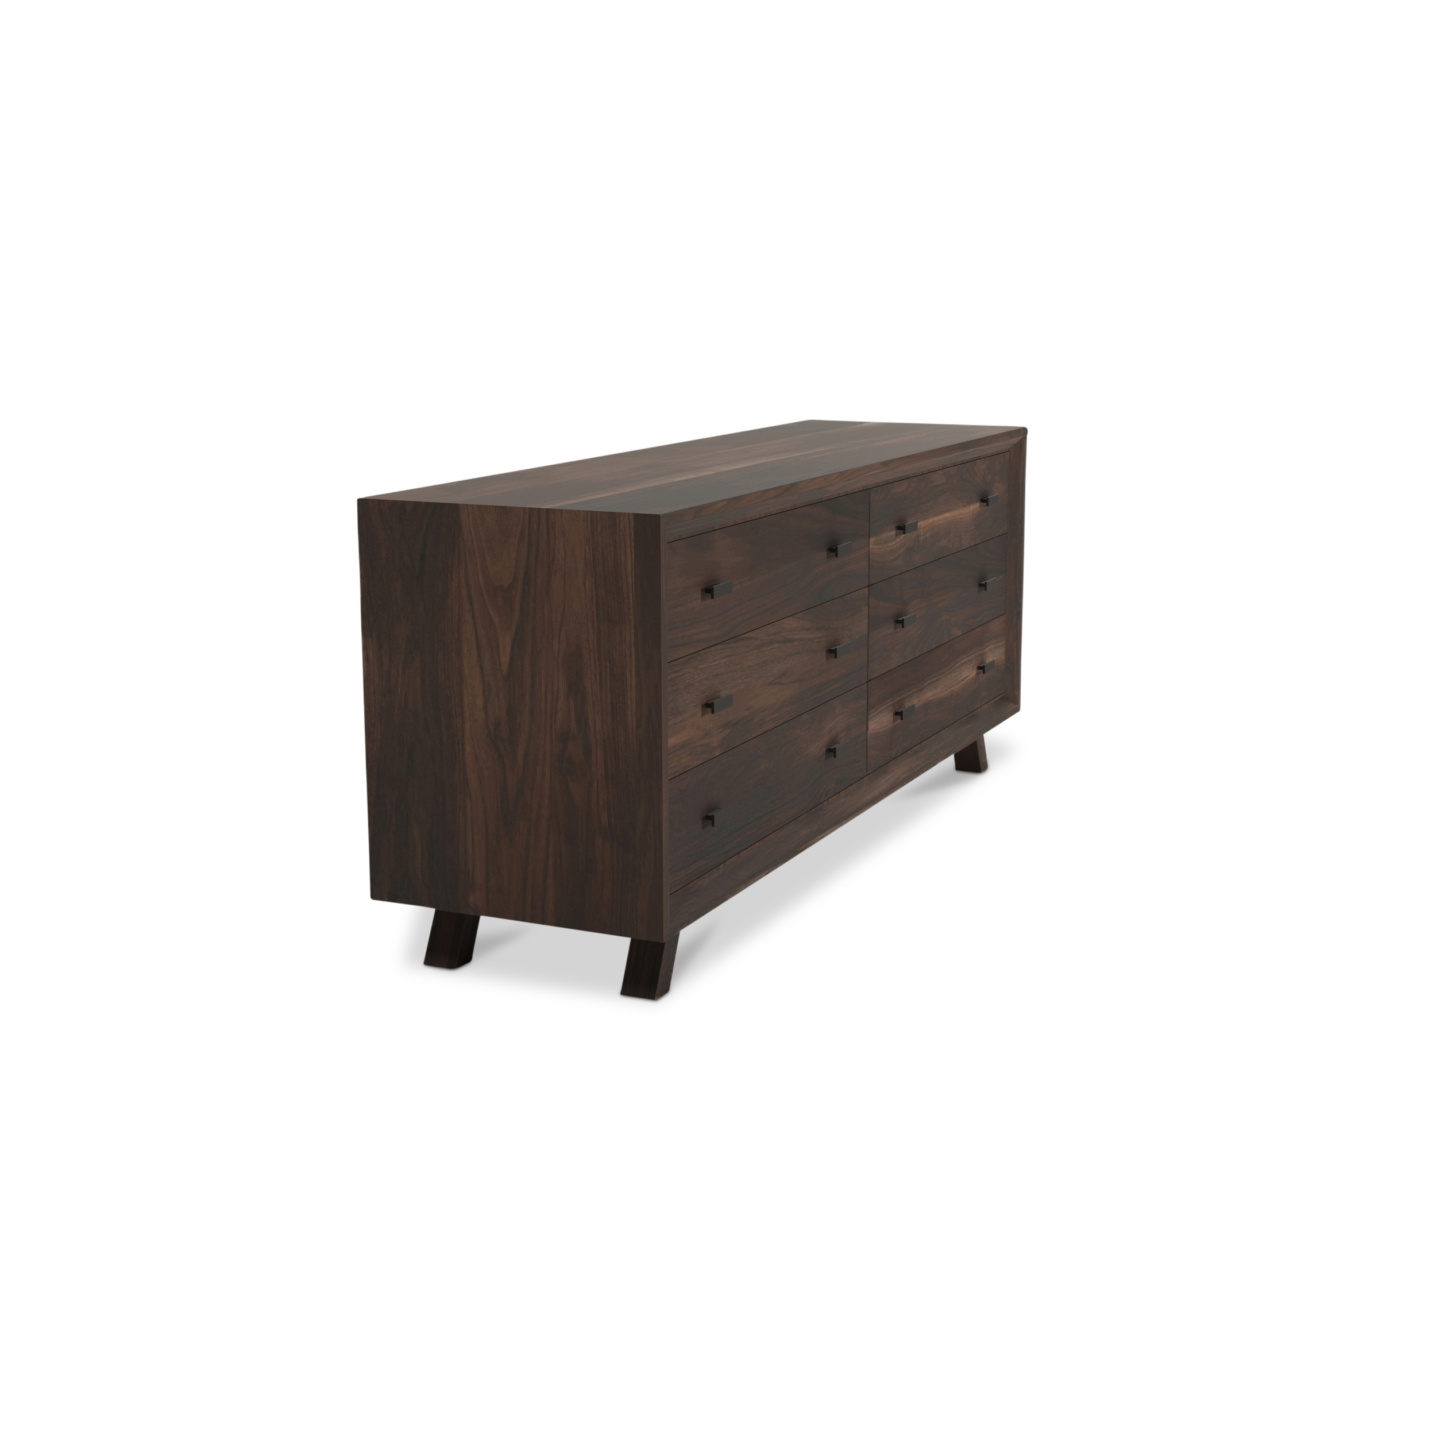 Walnut wood dresser